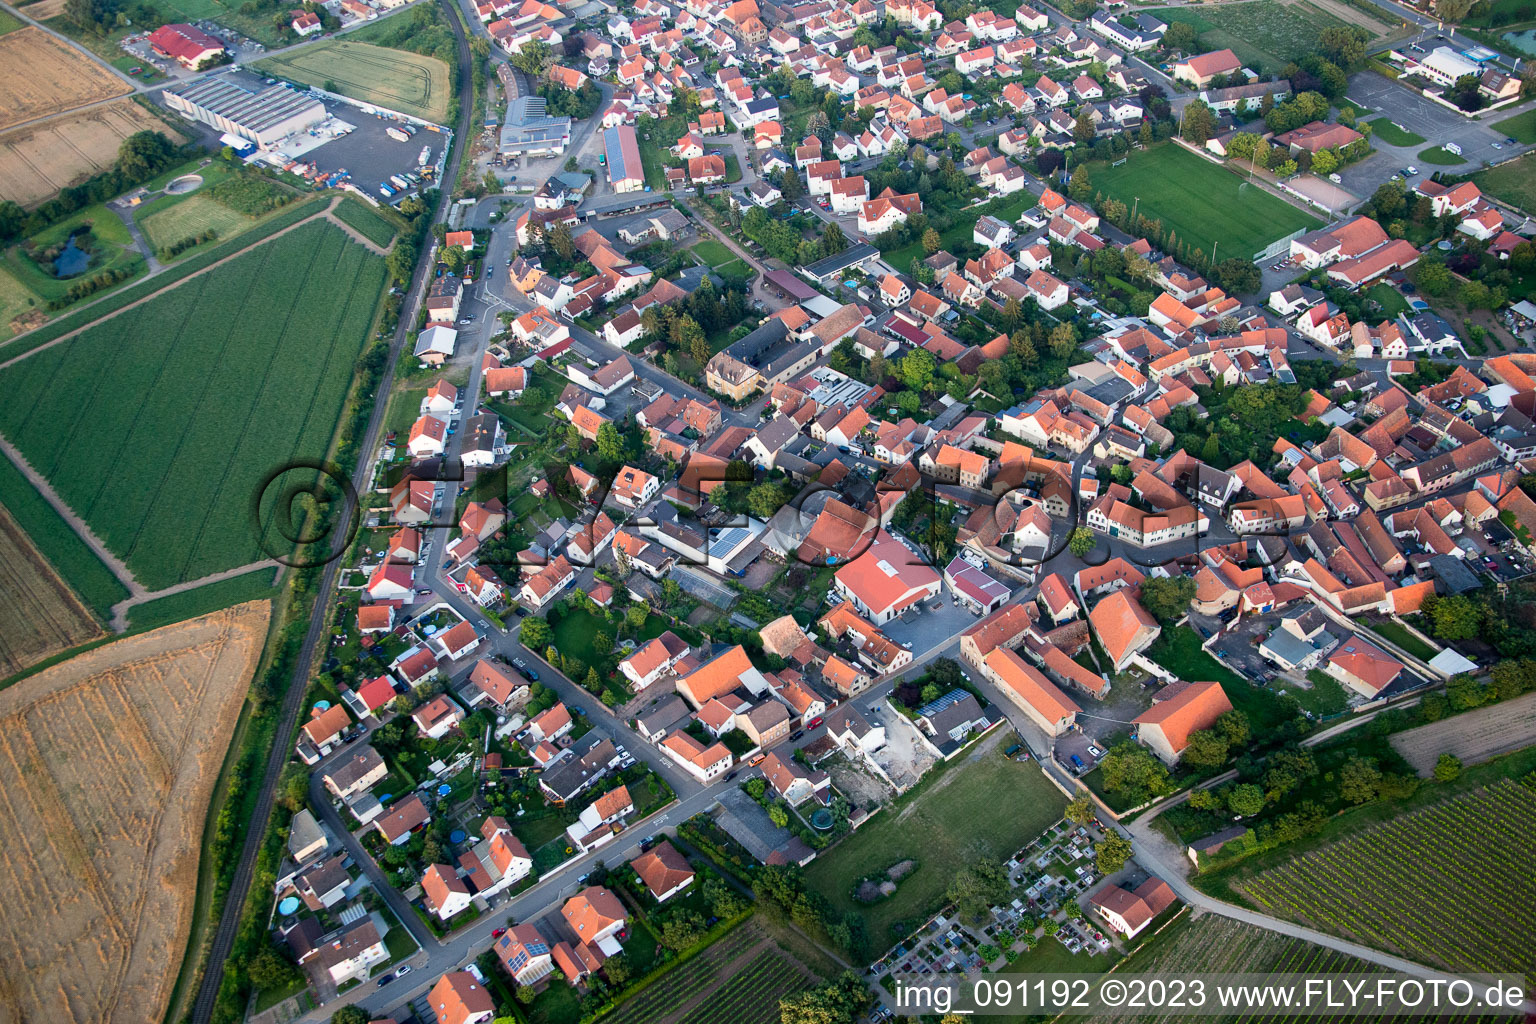 Aerial view of Bockenheim an der Weinstraße in the state Rhineland-Palatinate, Germany